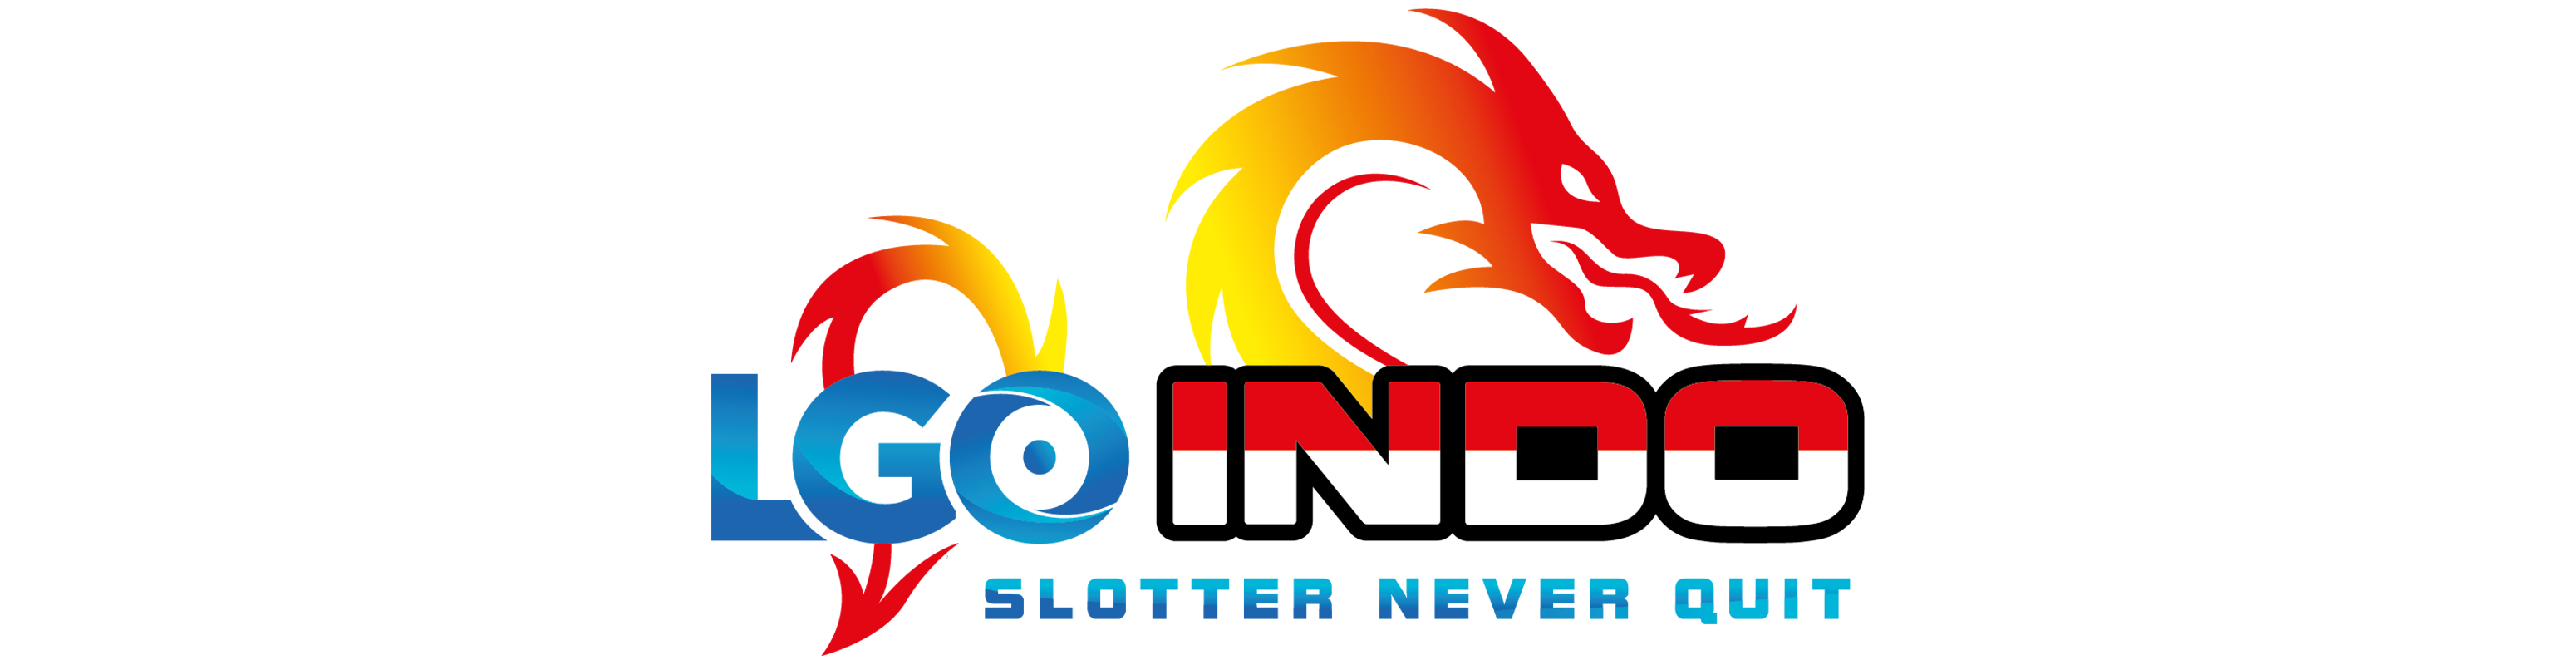 Logo LGOINDO